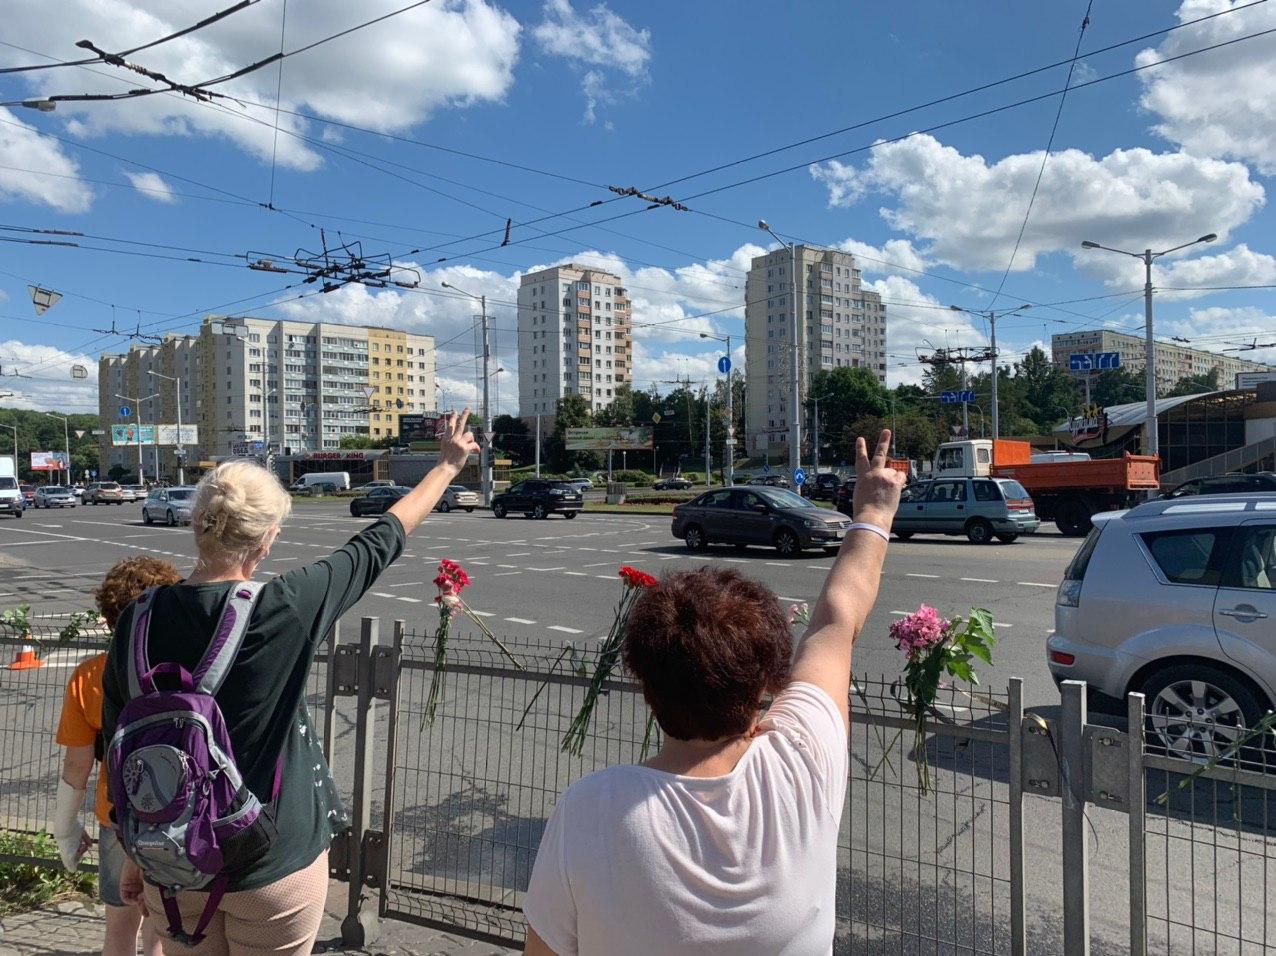 В Минске люди массово возлагают цветы в районе станции метро “Пушкинская”